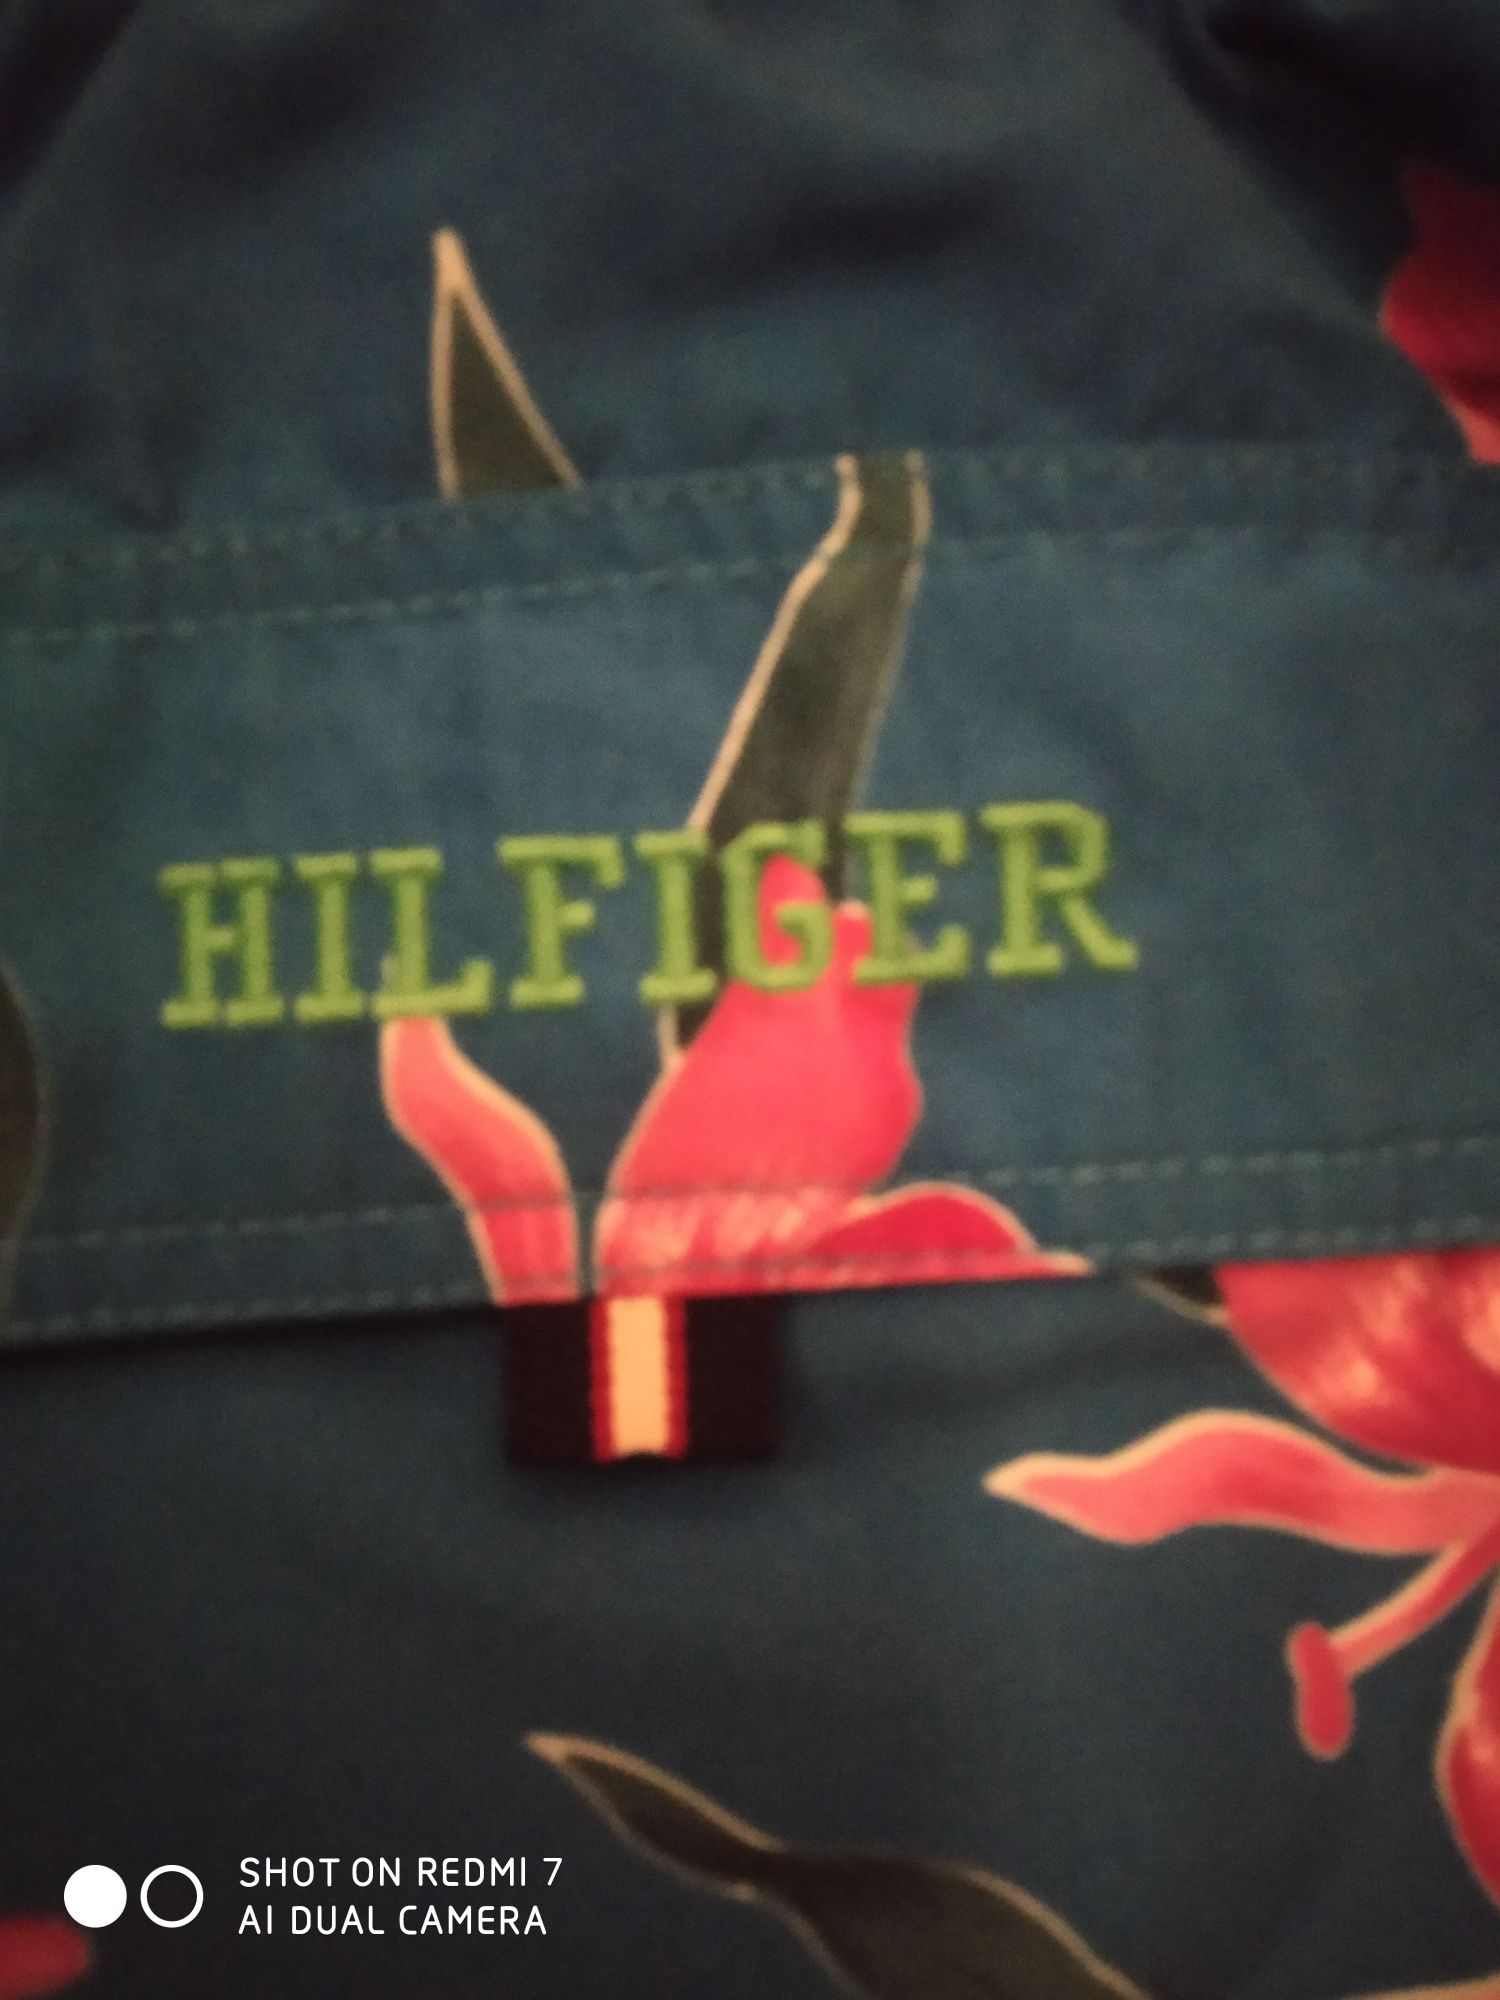 Панталонки TOMMY HILFIGER ,XL размер цена 50лв